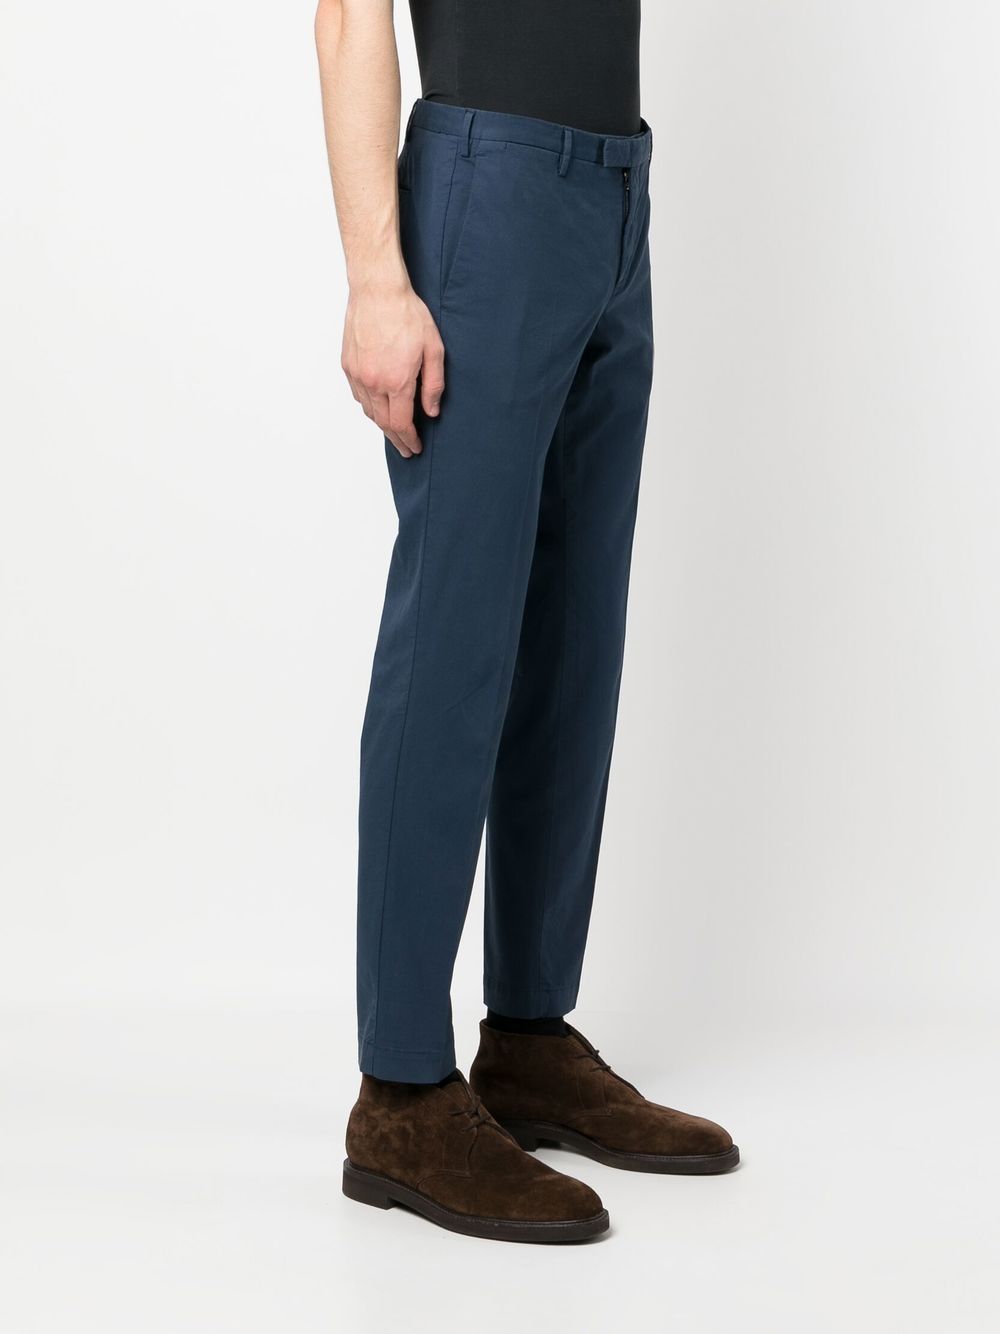 Pantalone blu in cotone slim-cut